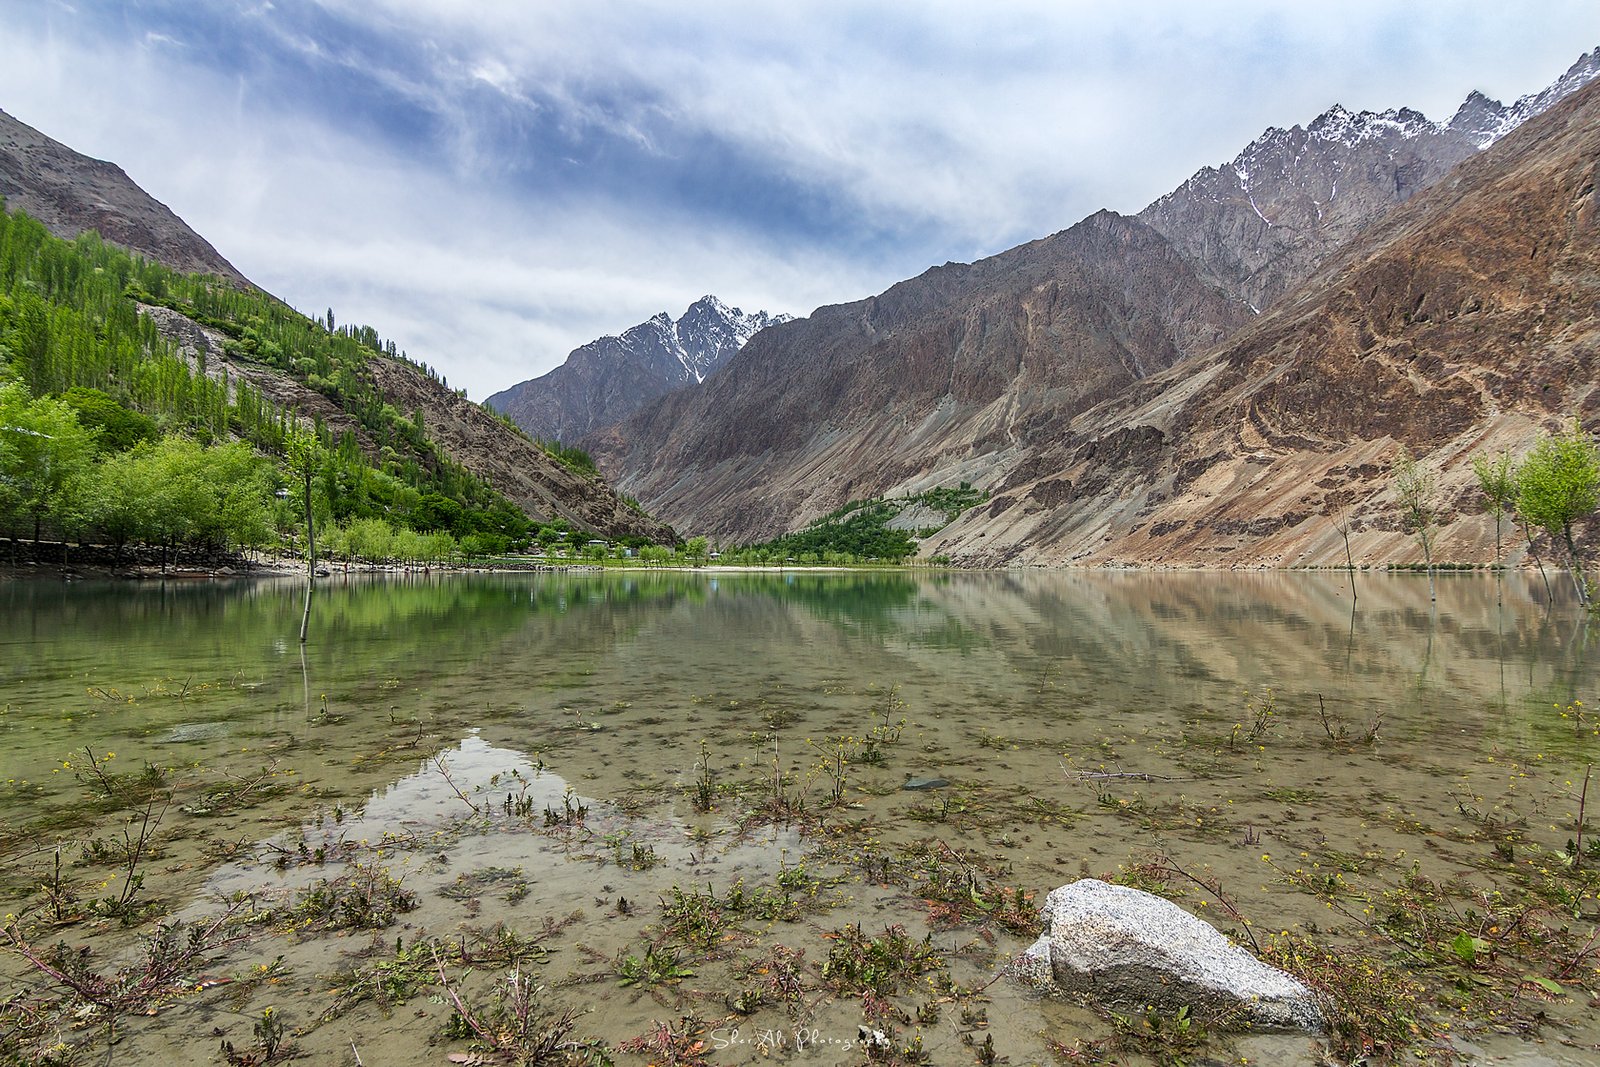 Khalti lake Gupis, Gilgit Baltistan